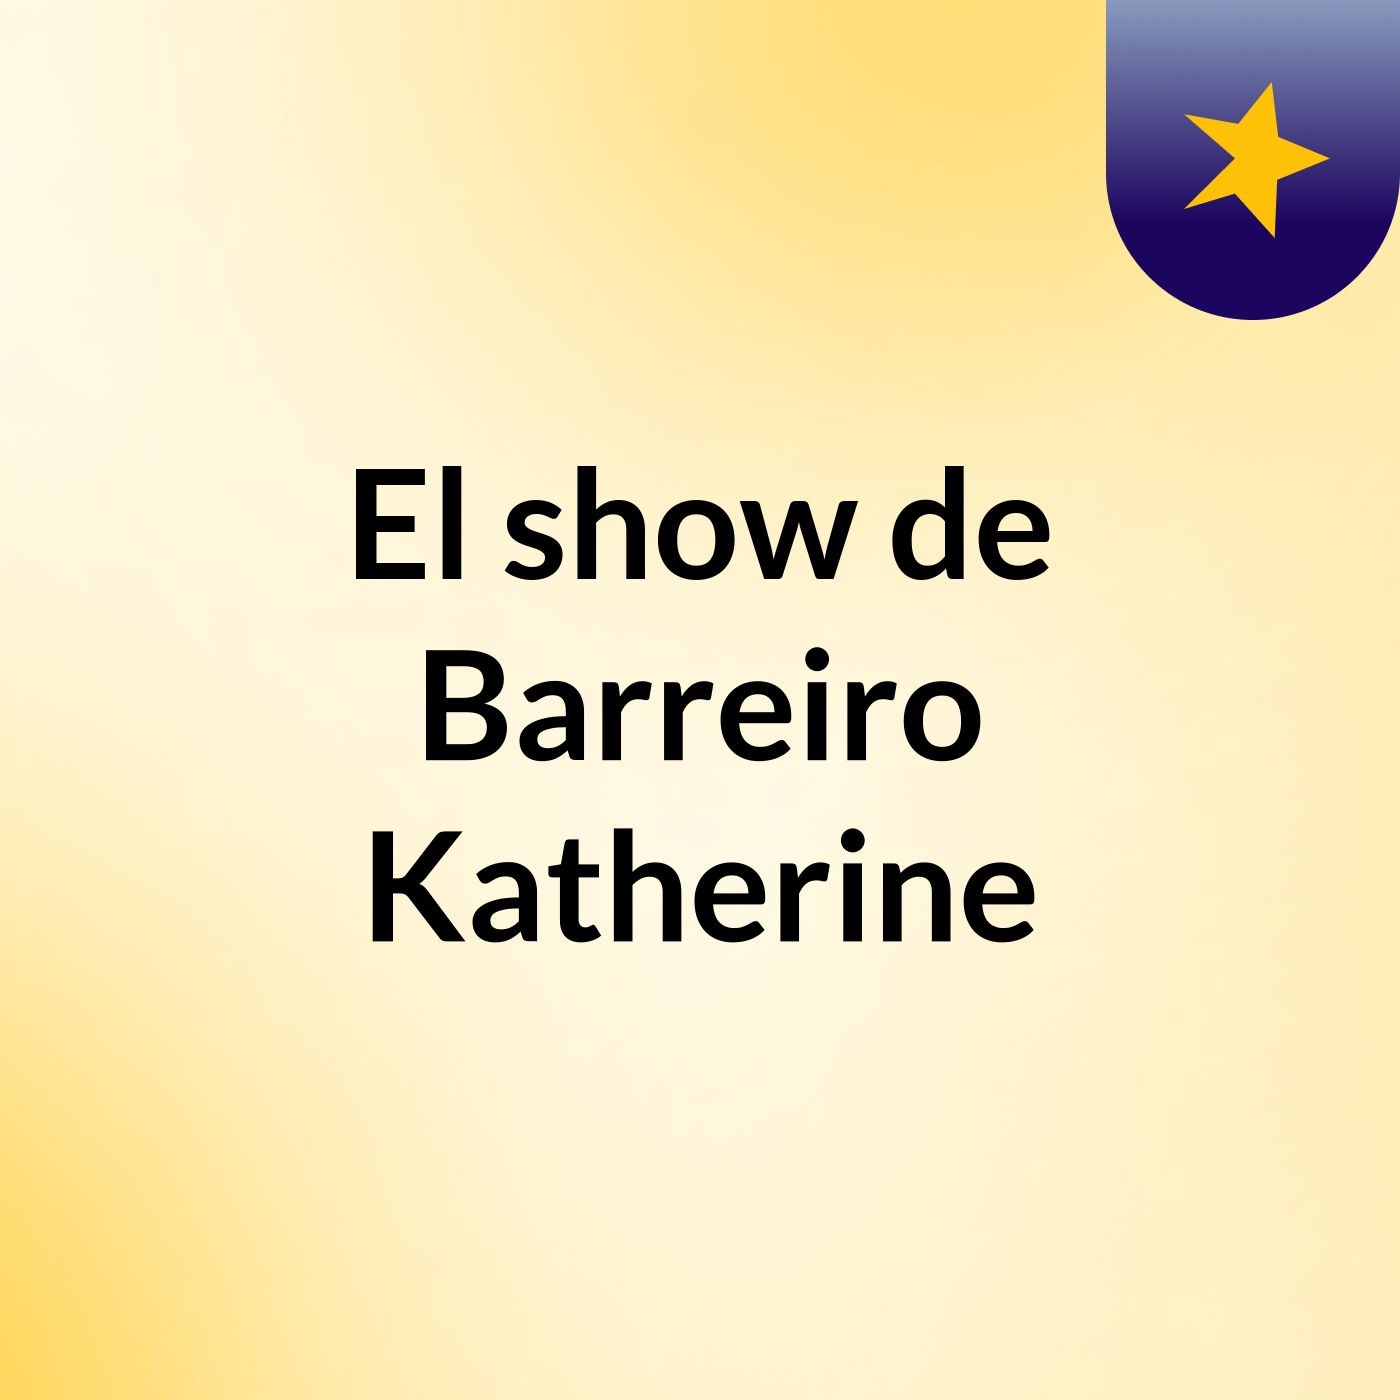 El show de Barreiro Katherine